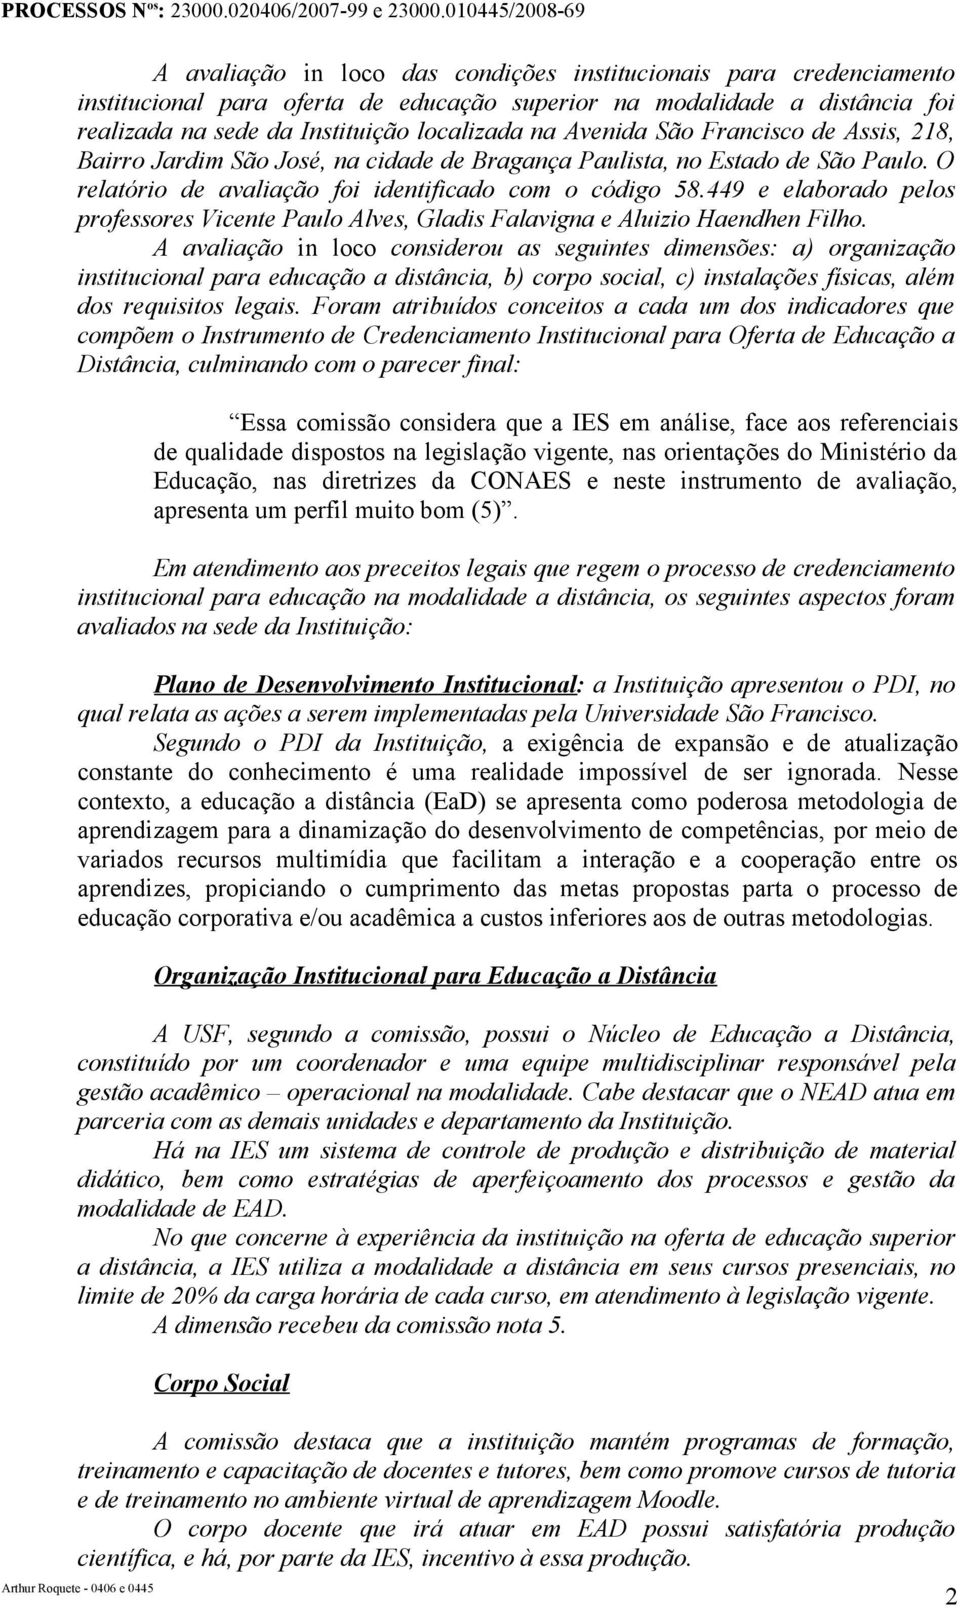 449 e elaborado pelos professores Vicente Paulo Alves, Gladis Falavigna e Aluizio Haendhen Filho.